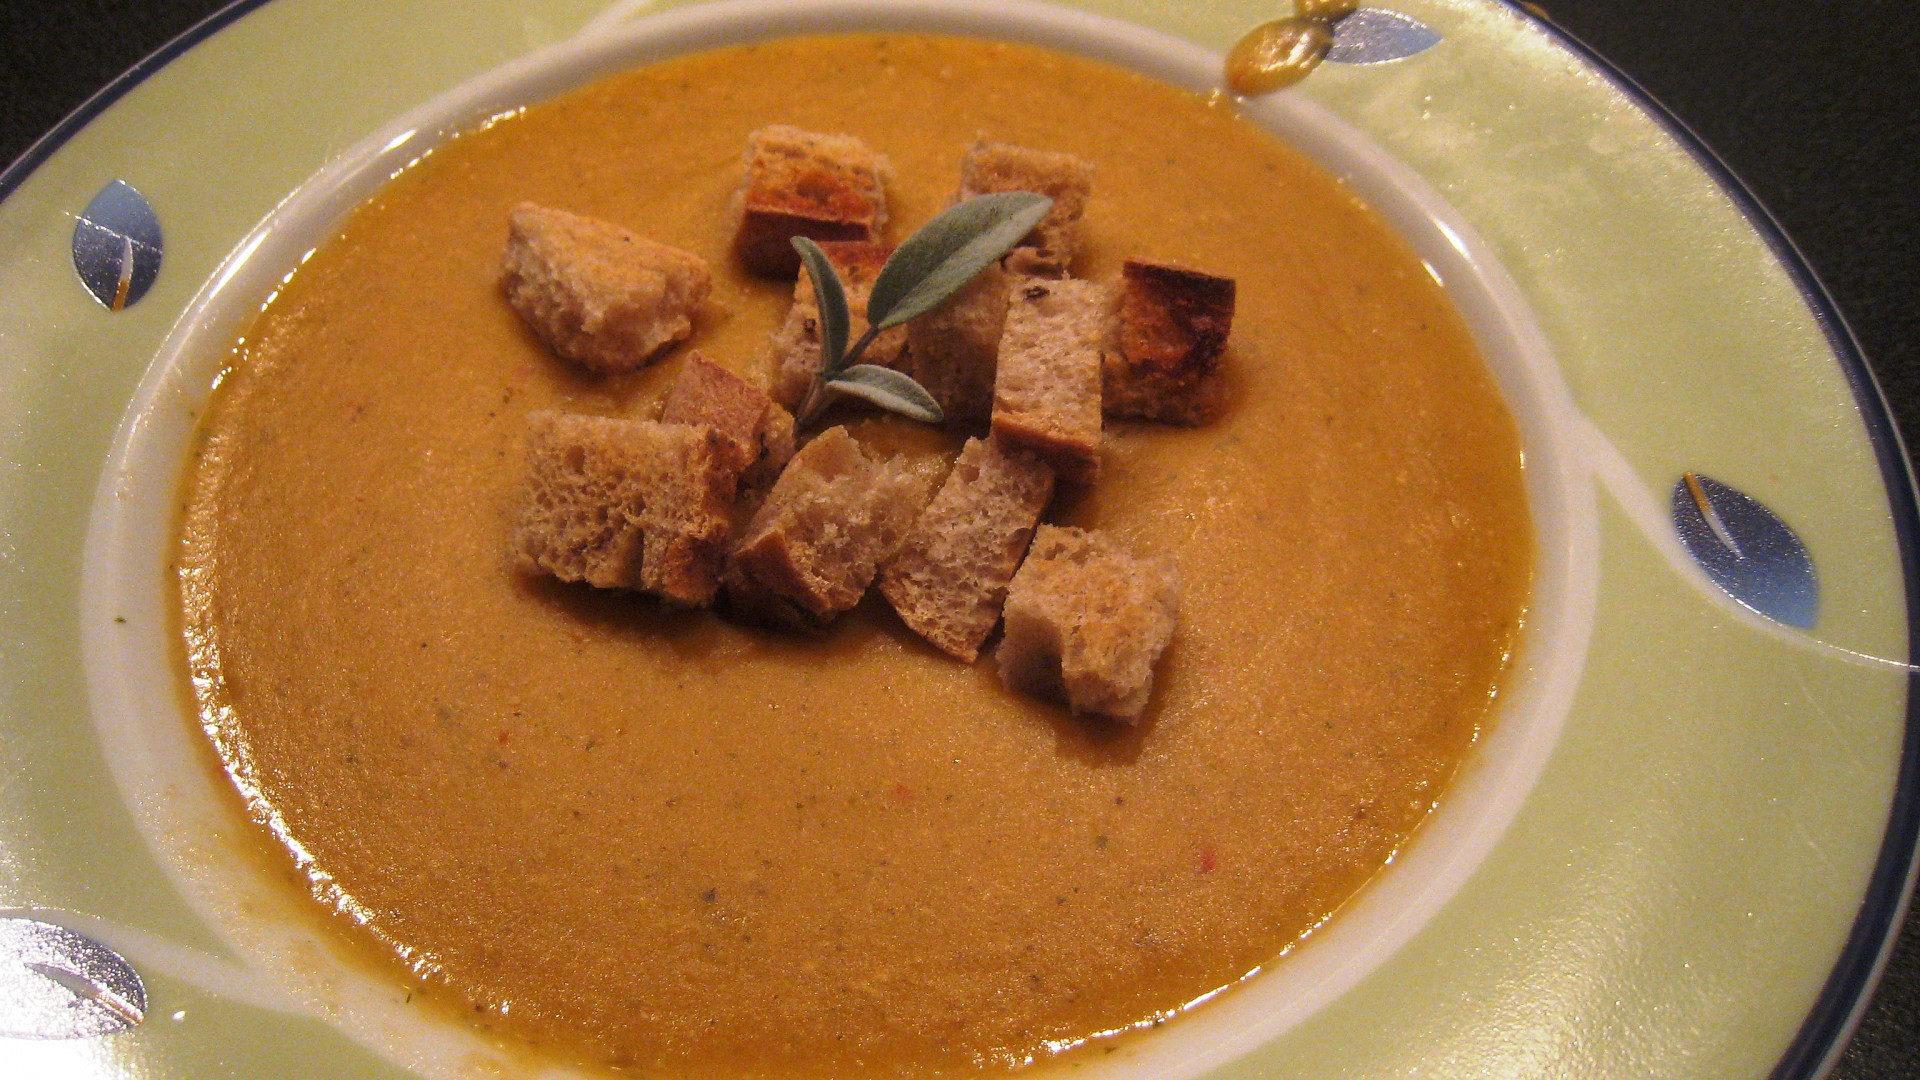 Krémová polévka z červené čočky s krutonky